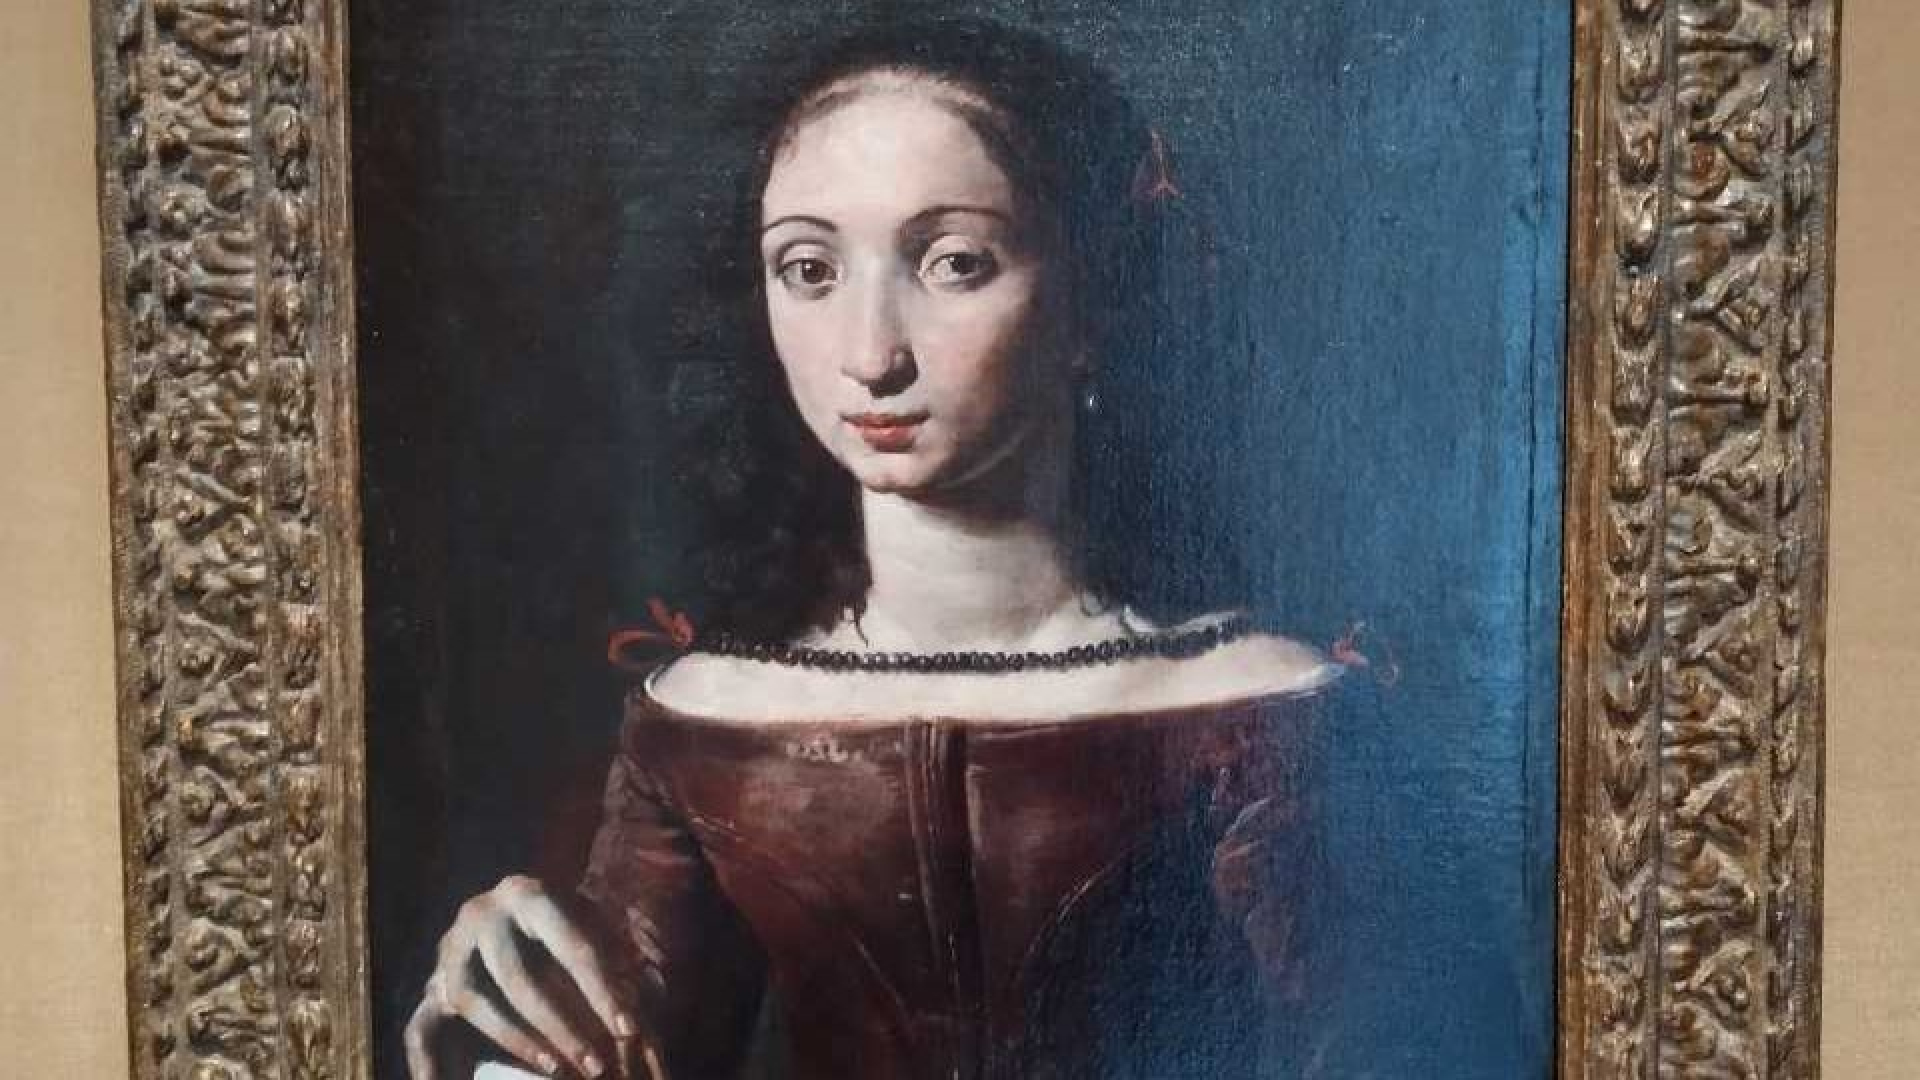 I barokní malířka Artemisia Gentileschi by si dobře rozuměla se sociálními médii, míní historička umění Ježková